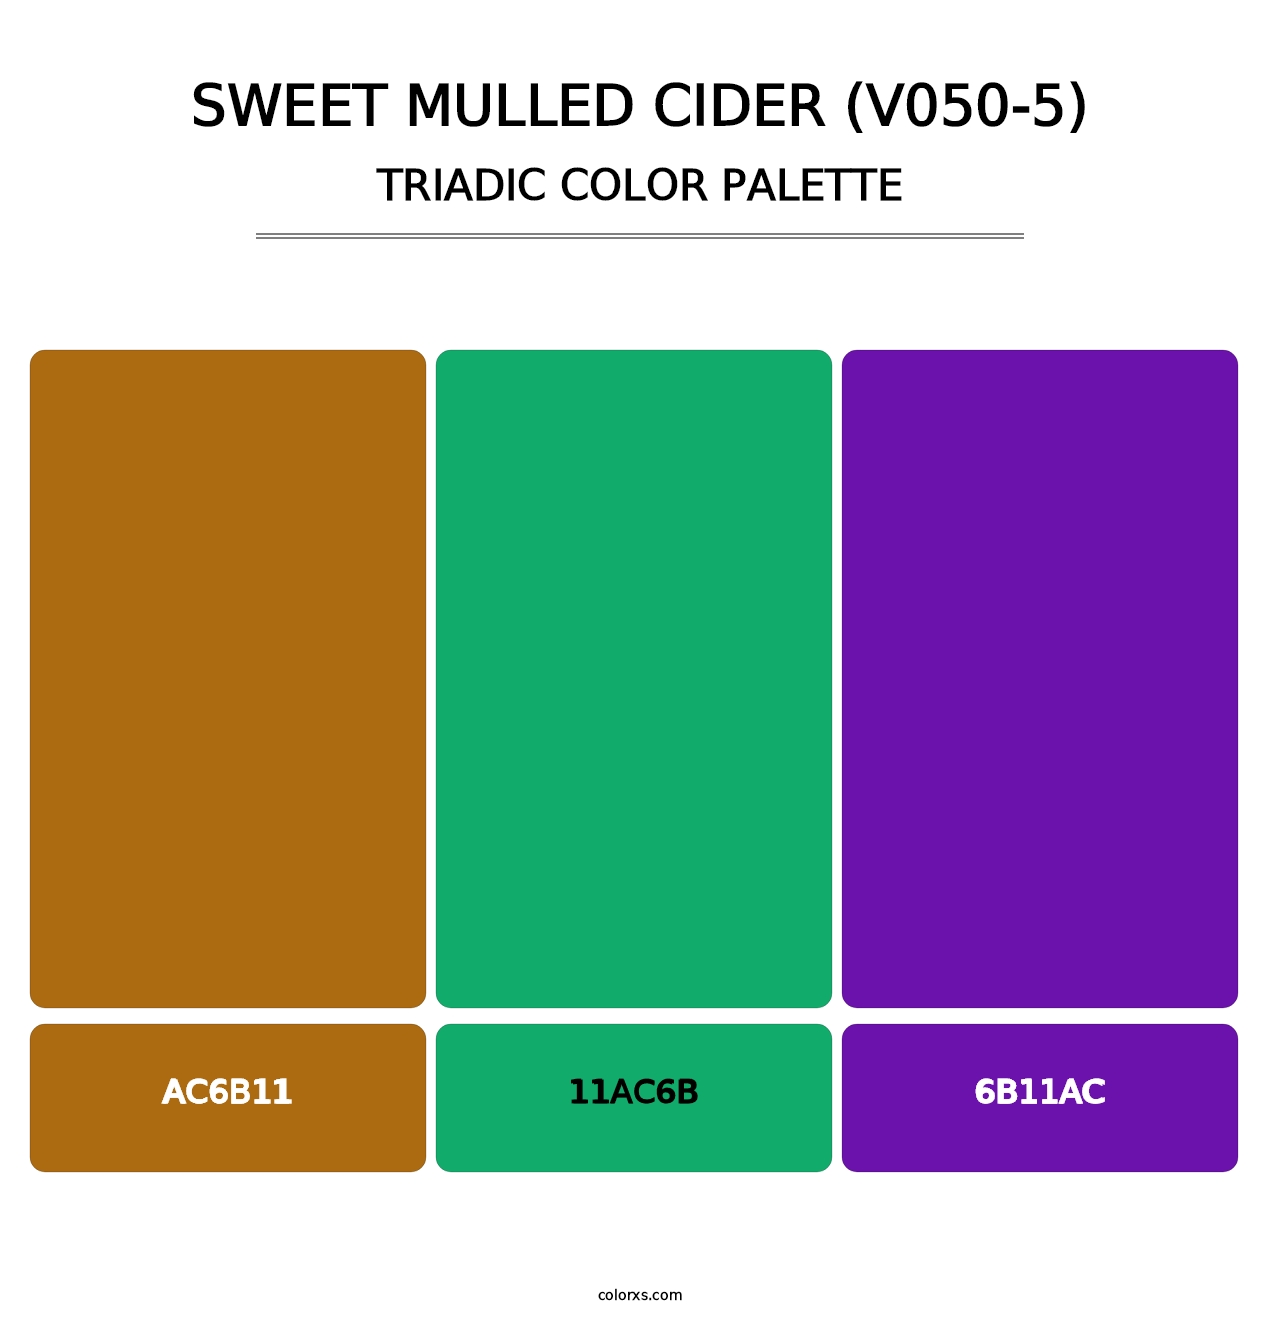 Sweet Mulled Cider (V050-5) - Triadic Color Palette